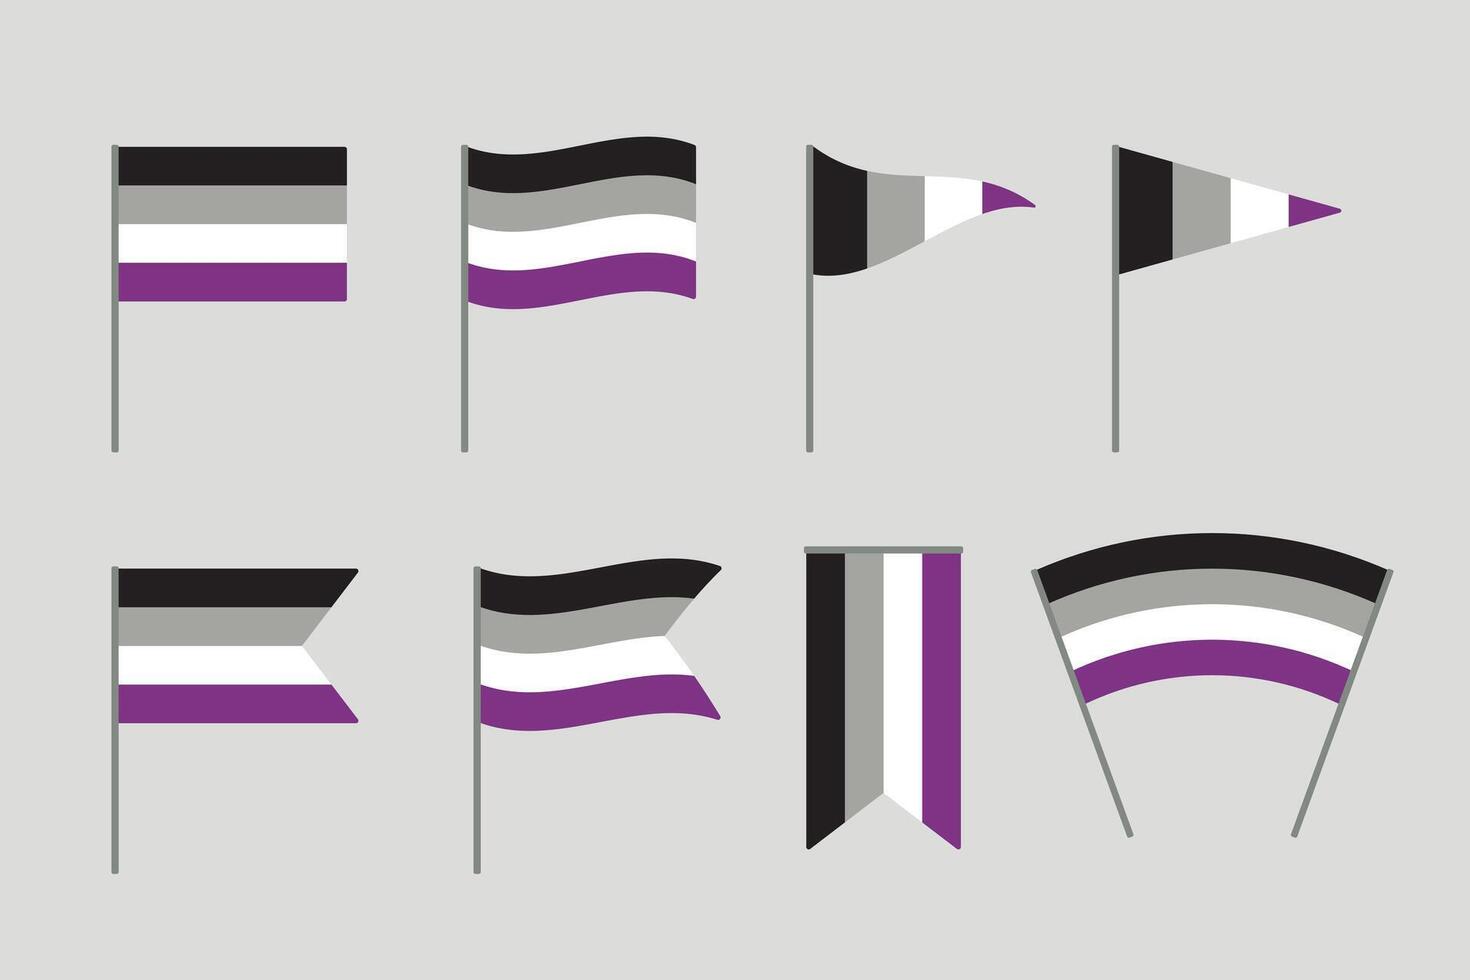 noir, gris, blanc et violet coloré asexué drapeau. lgbtqi concept. plat vecteur illustration.